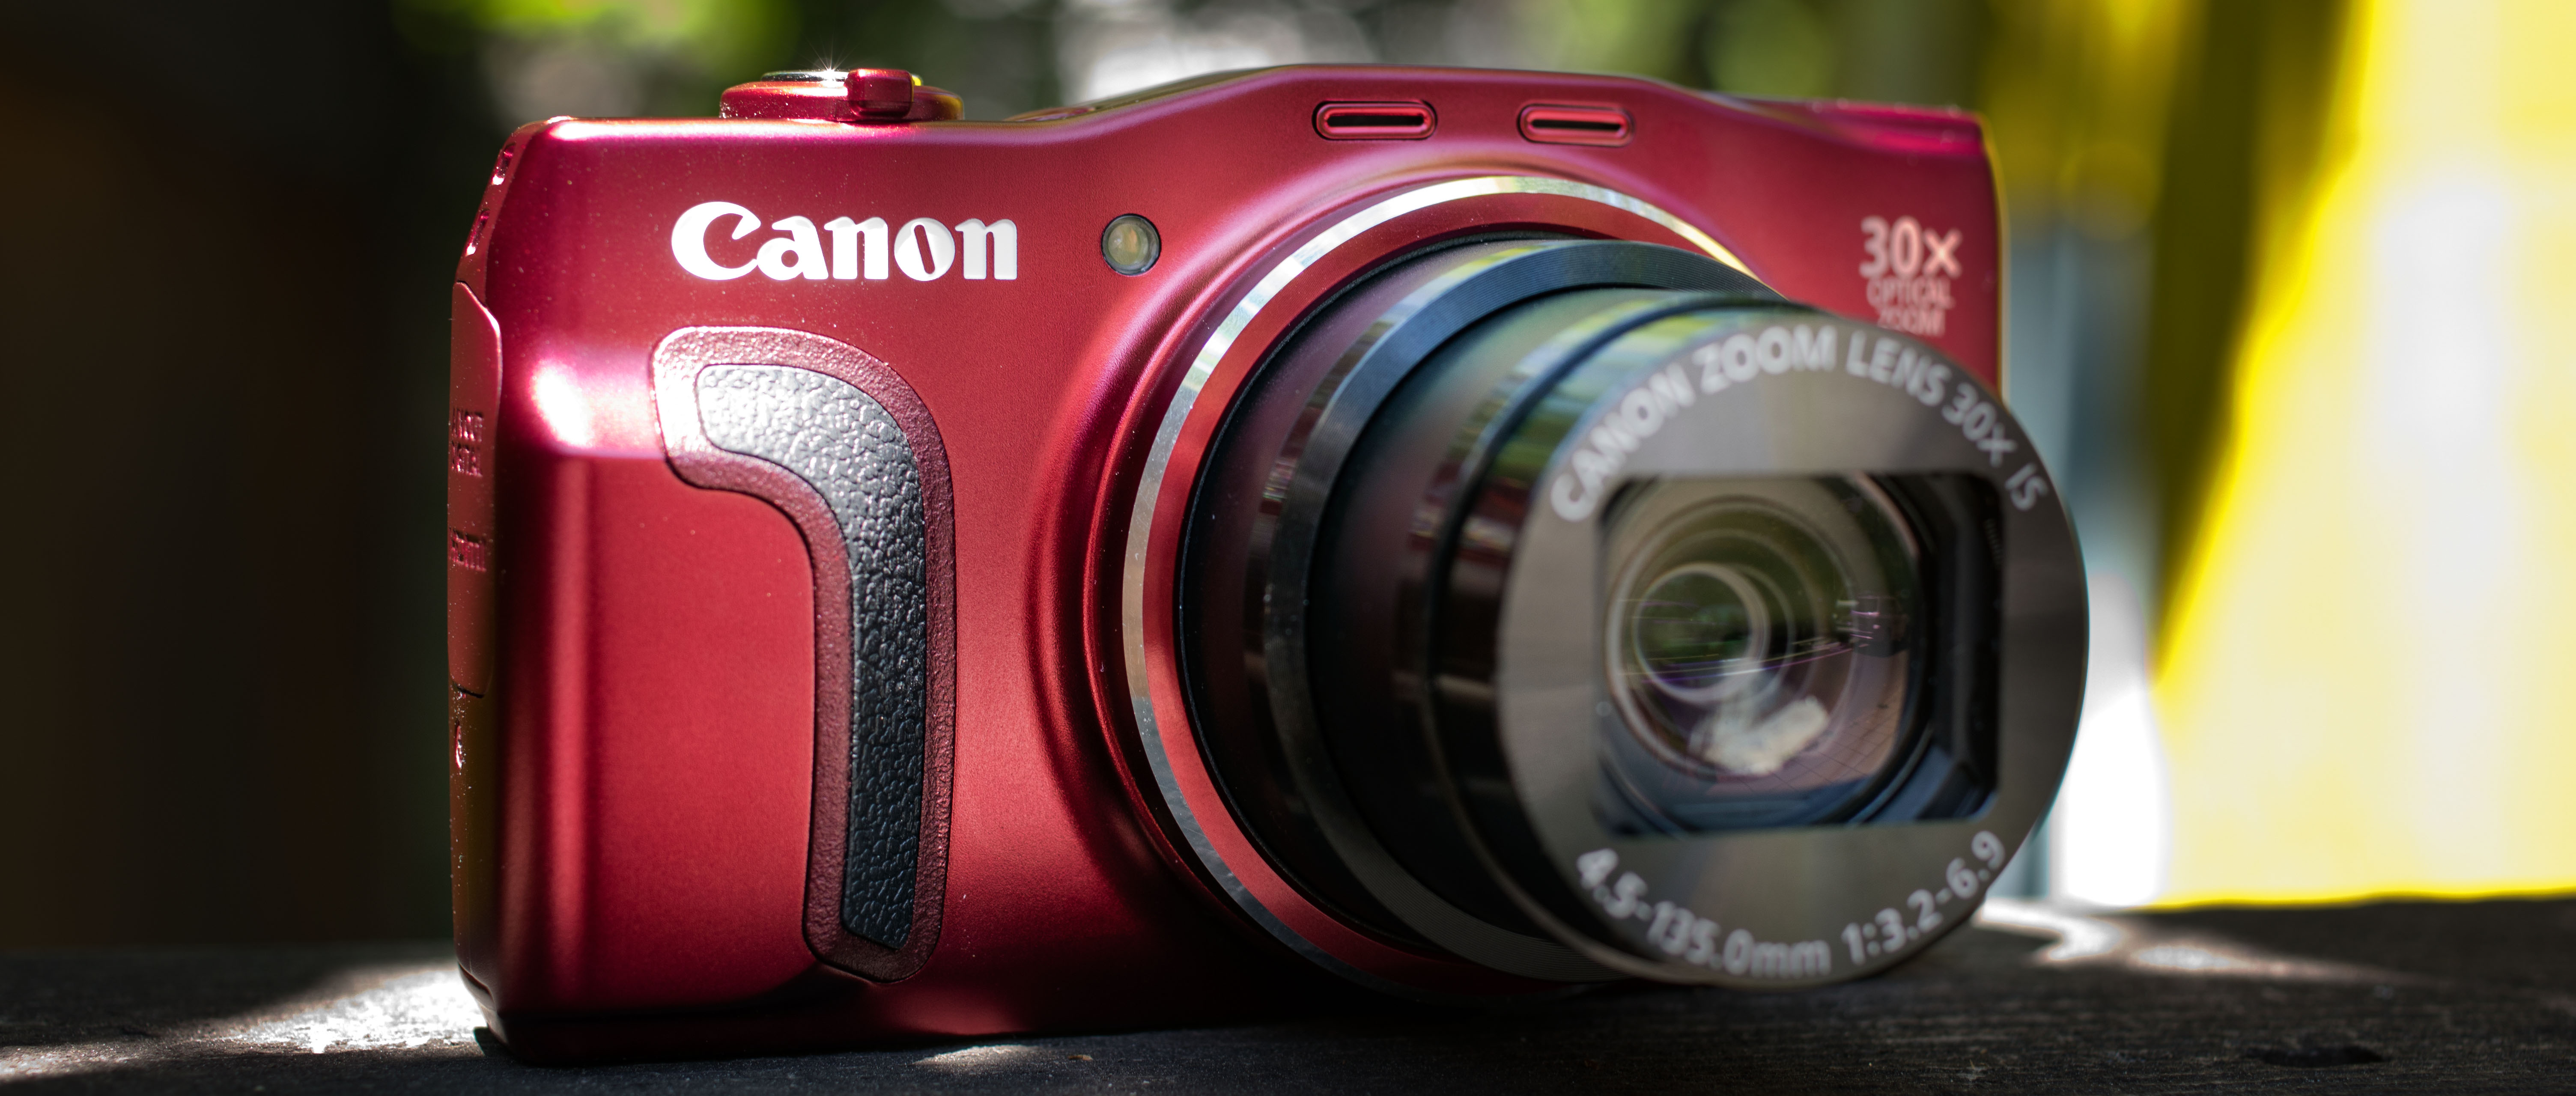 Canon PowerShot SX700 HS Digital Camera Review - Reviewed.com Cameras